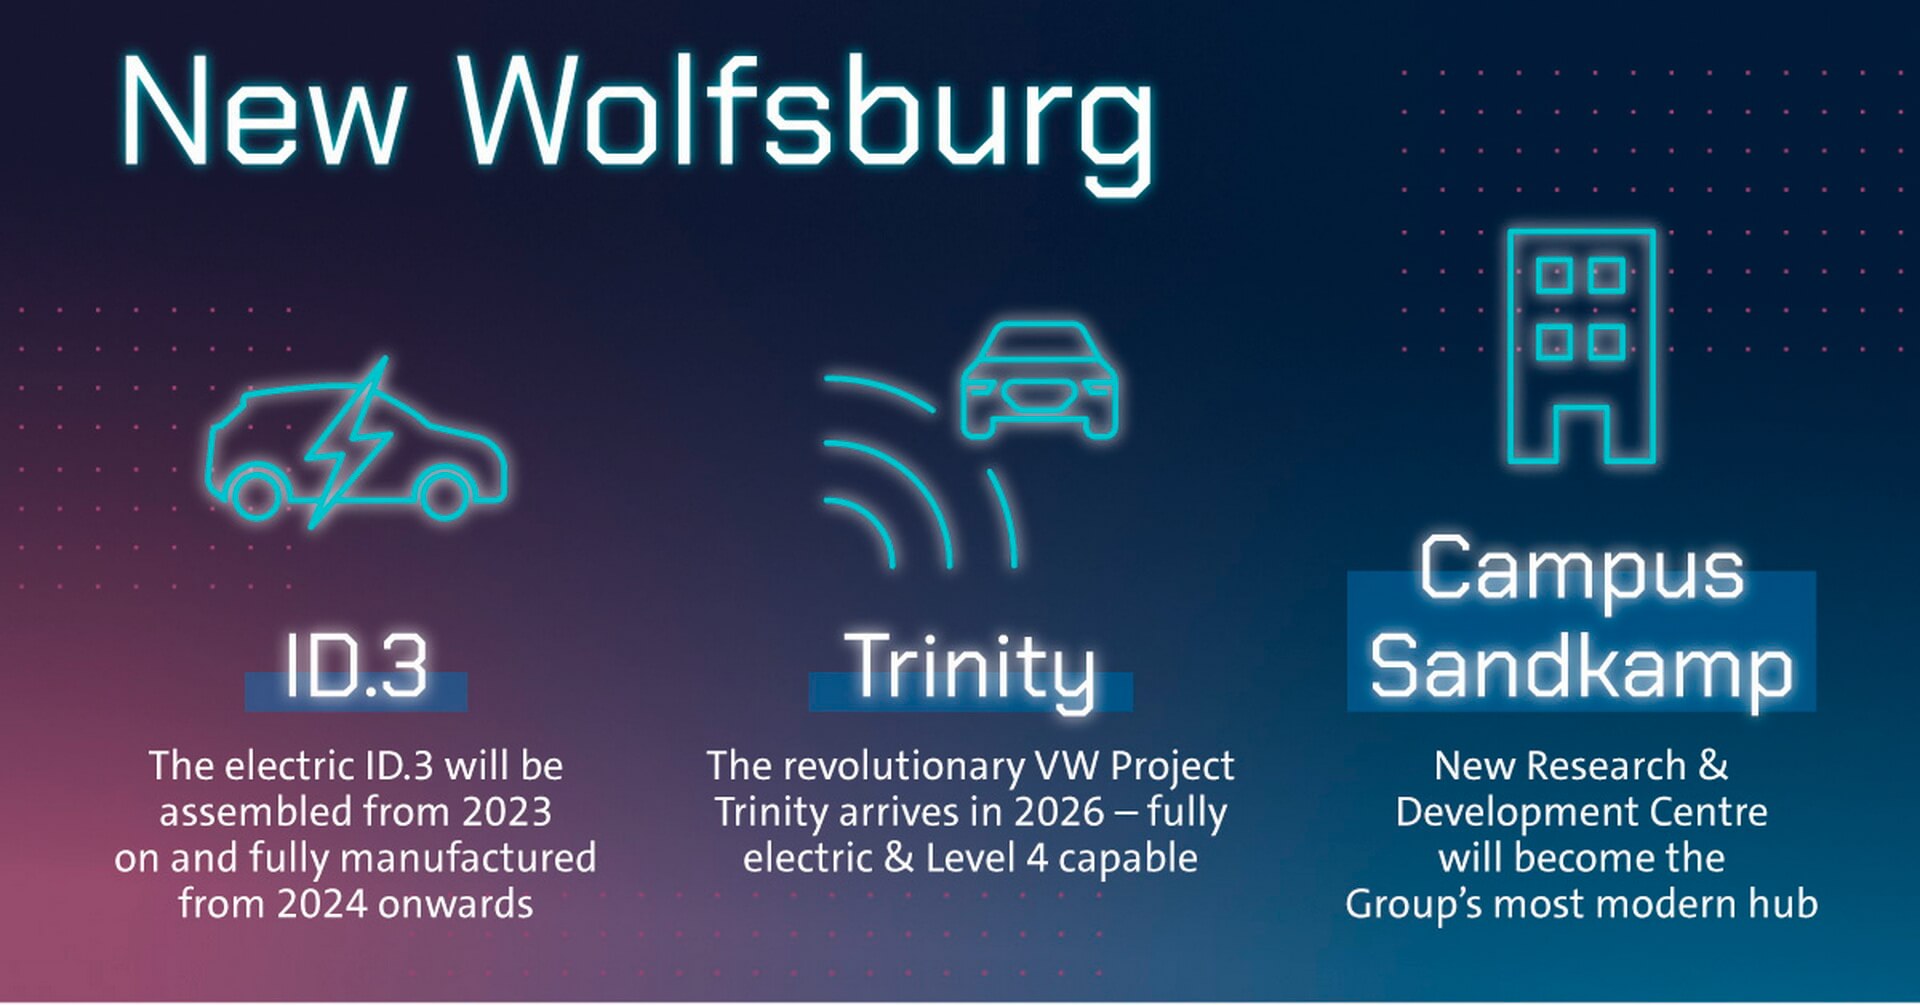 Утвержден проект Trinity для завода в Вольфсбурге, и дополнительные производные инструменты будут изучены в следующем раунде планирования